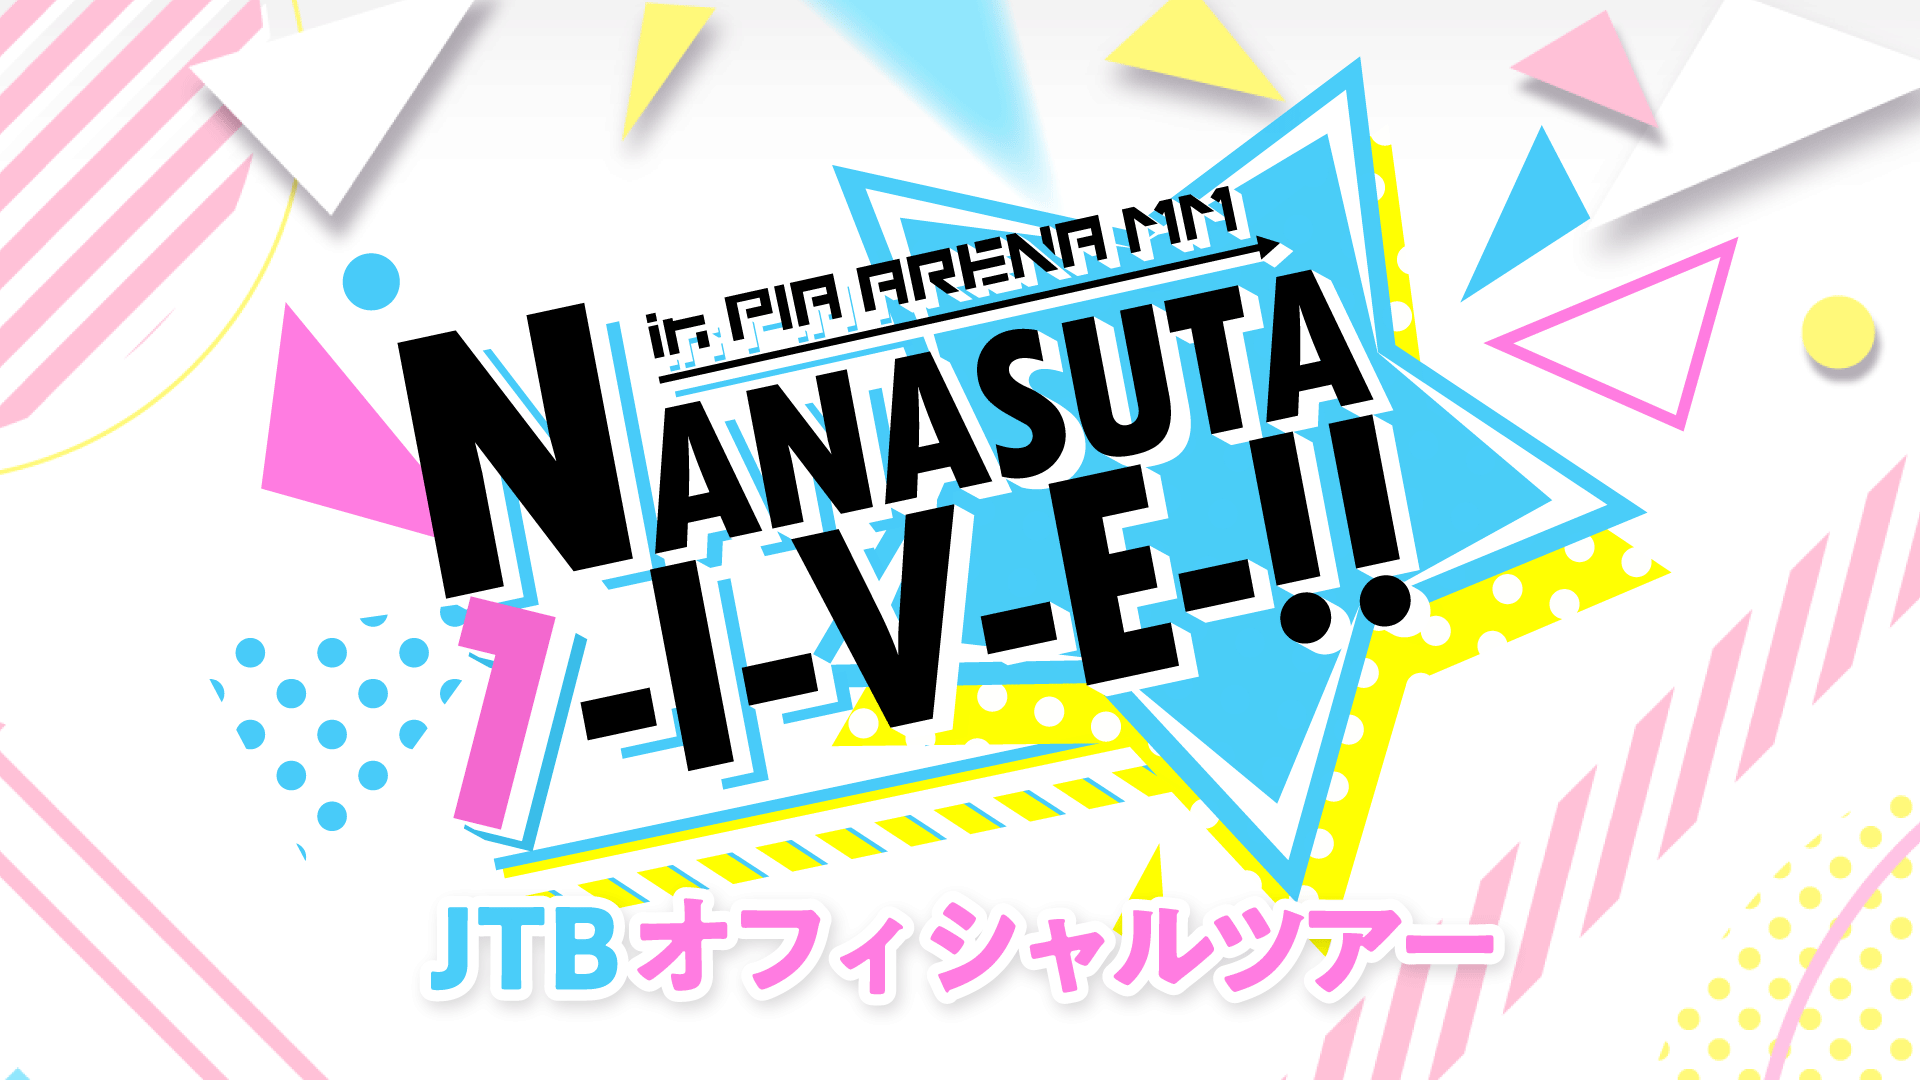 Tokyo 7th シスターズ NANASUTA L-I-V-E!! JTB オフィシャルツアー